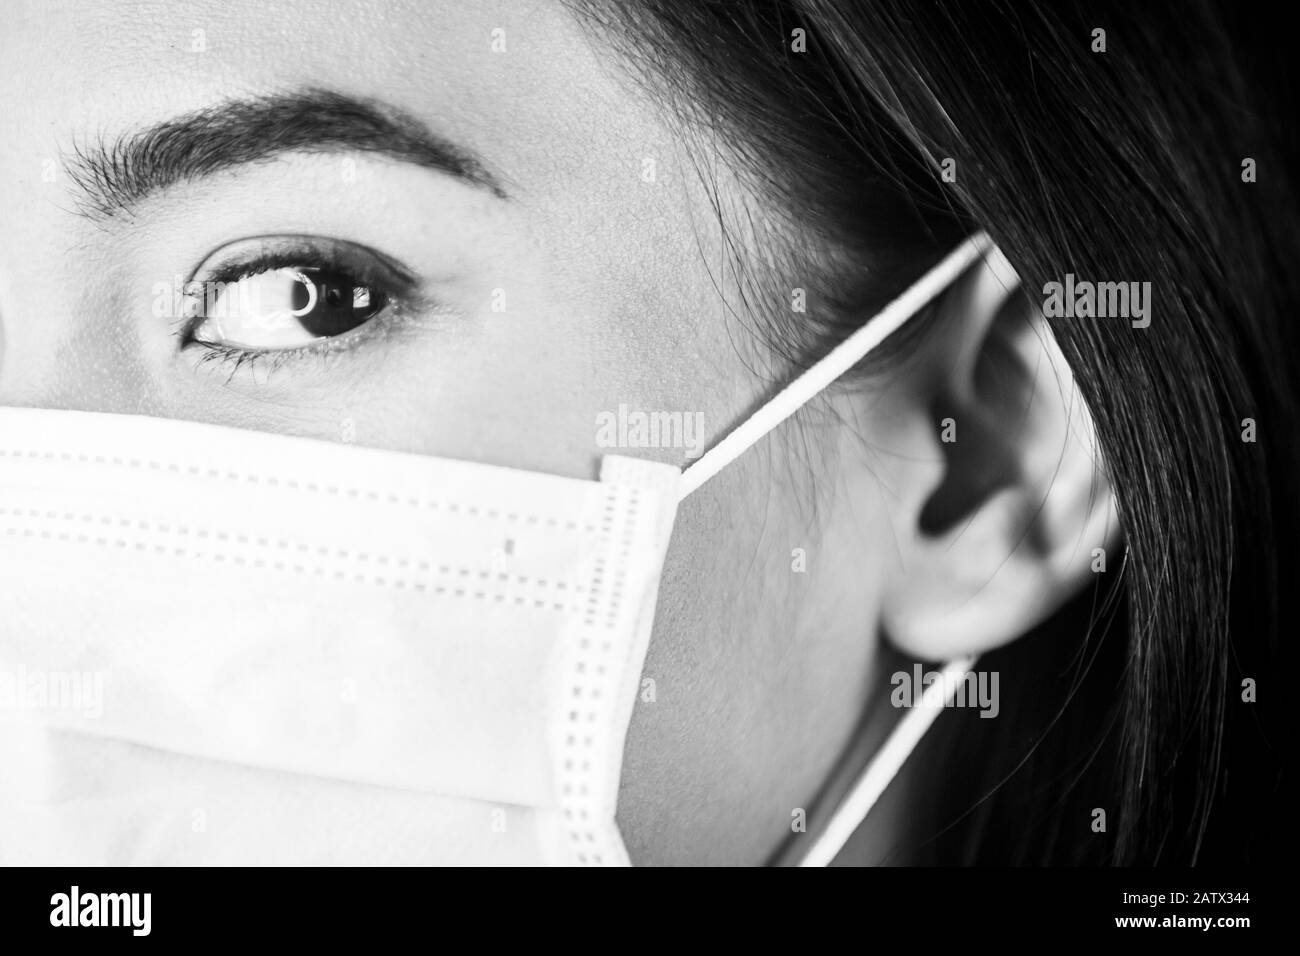 Ritratto di una donna che indossa una maschera medica per il viso per proteggere il tratto respiratorio superiore. Foto Stock